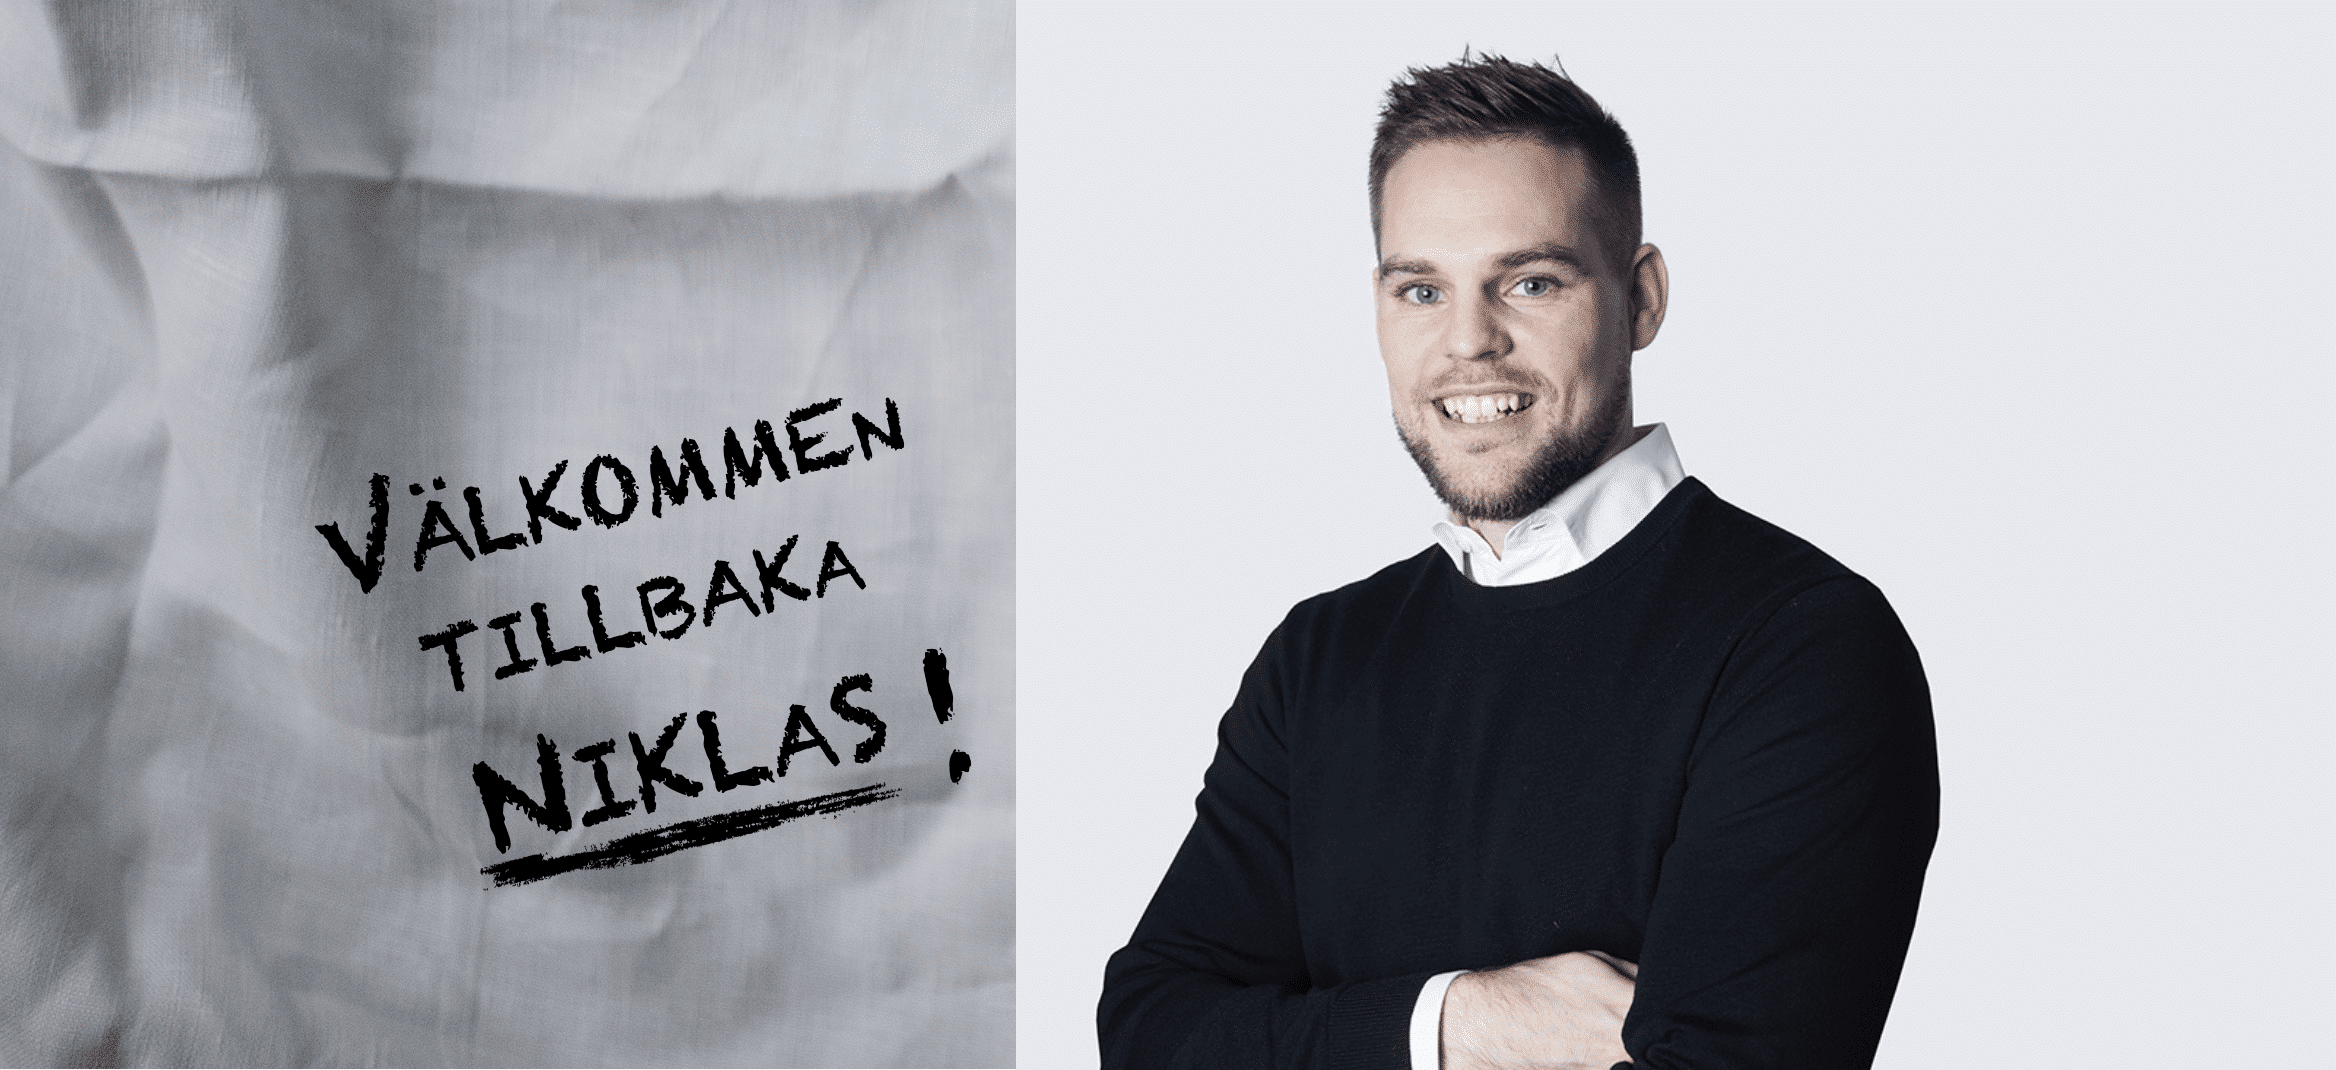 Niklas Karlsson är tillbaka